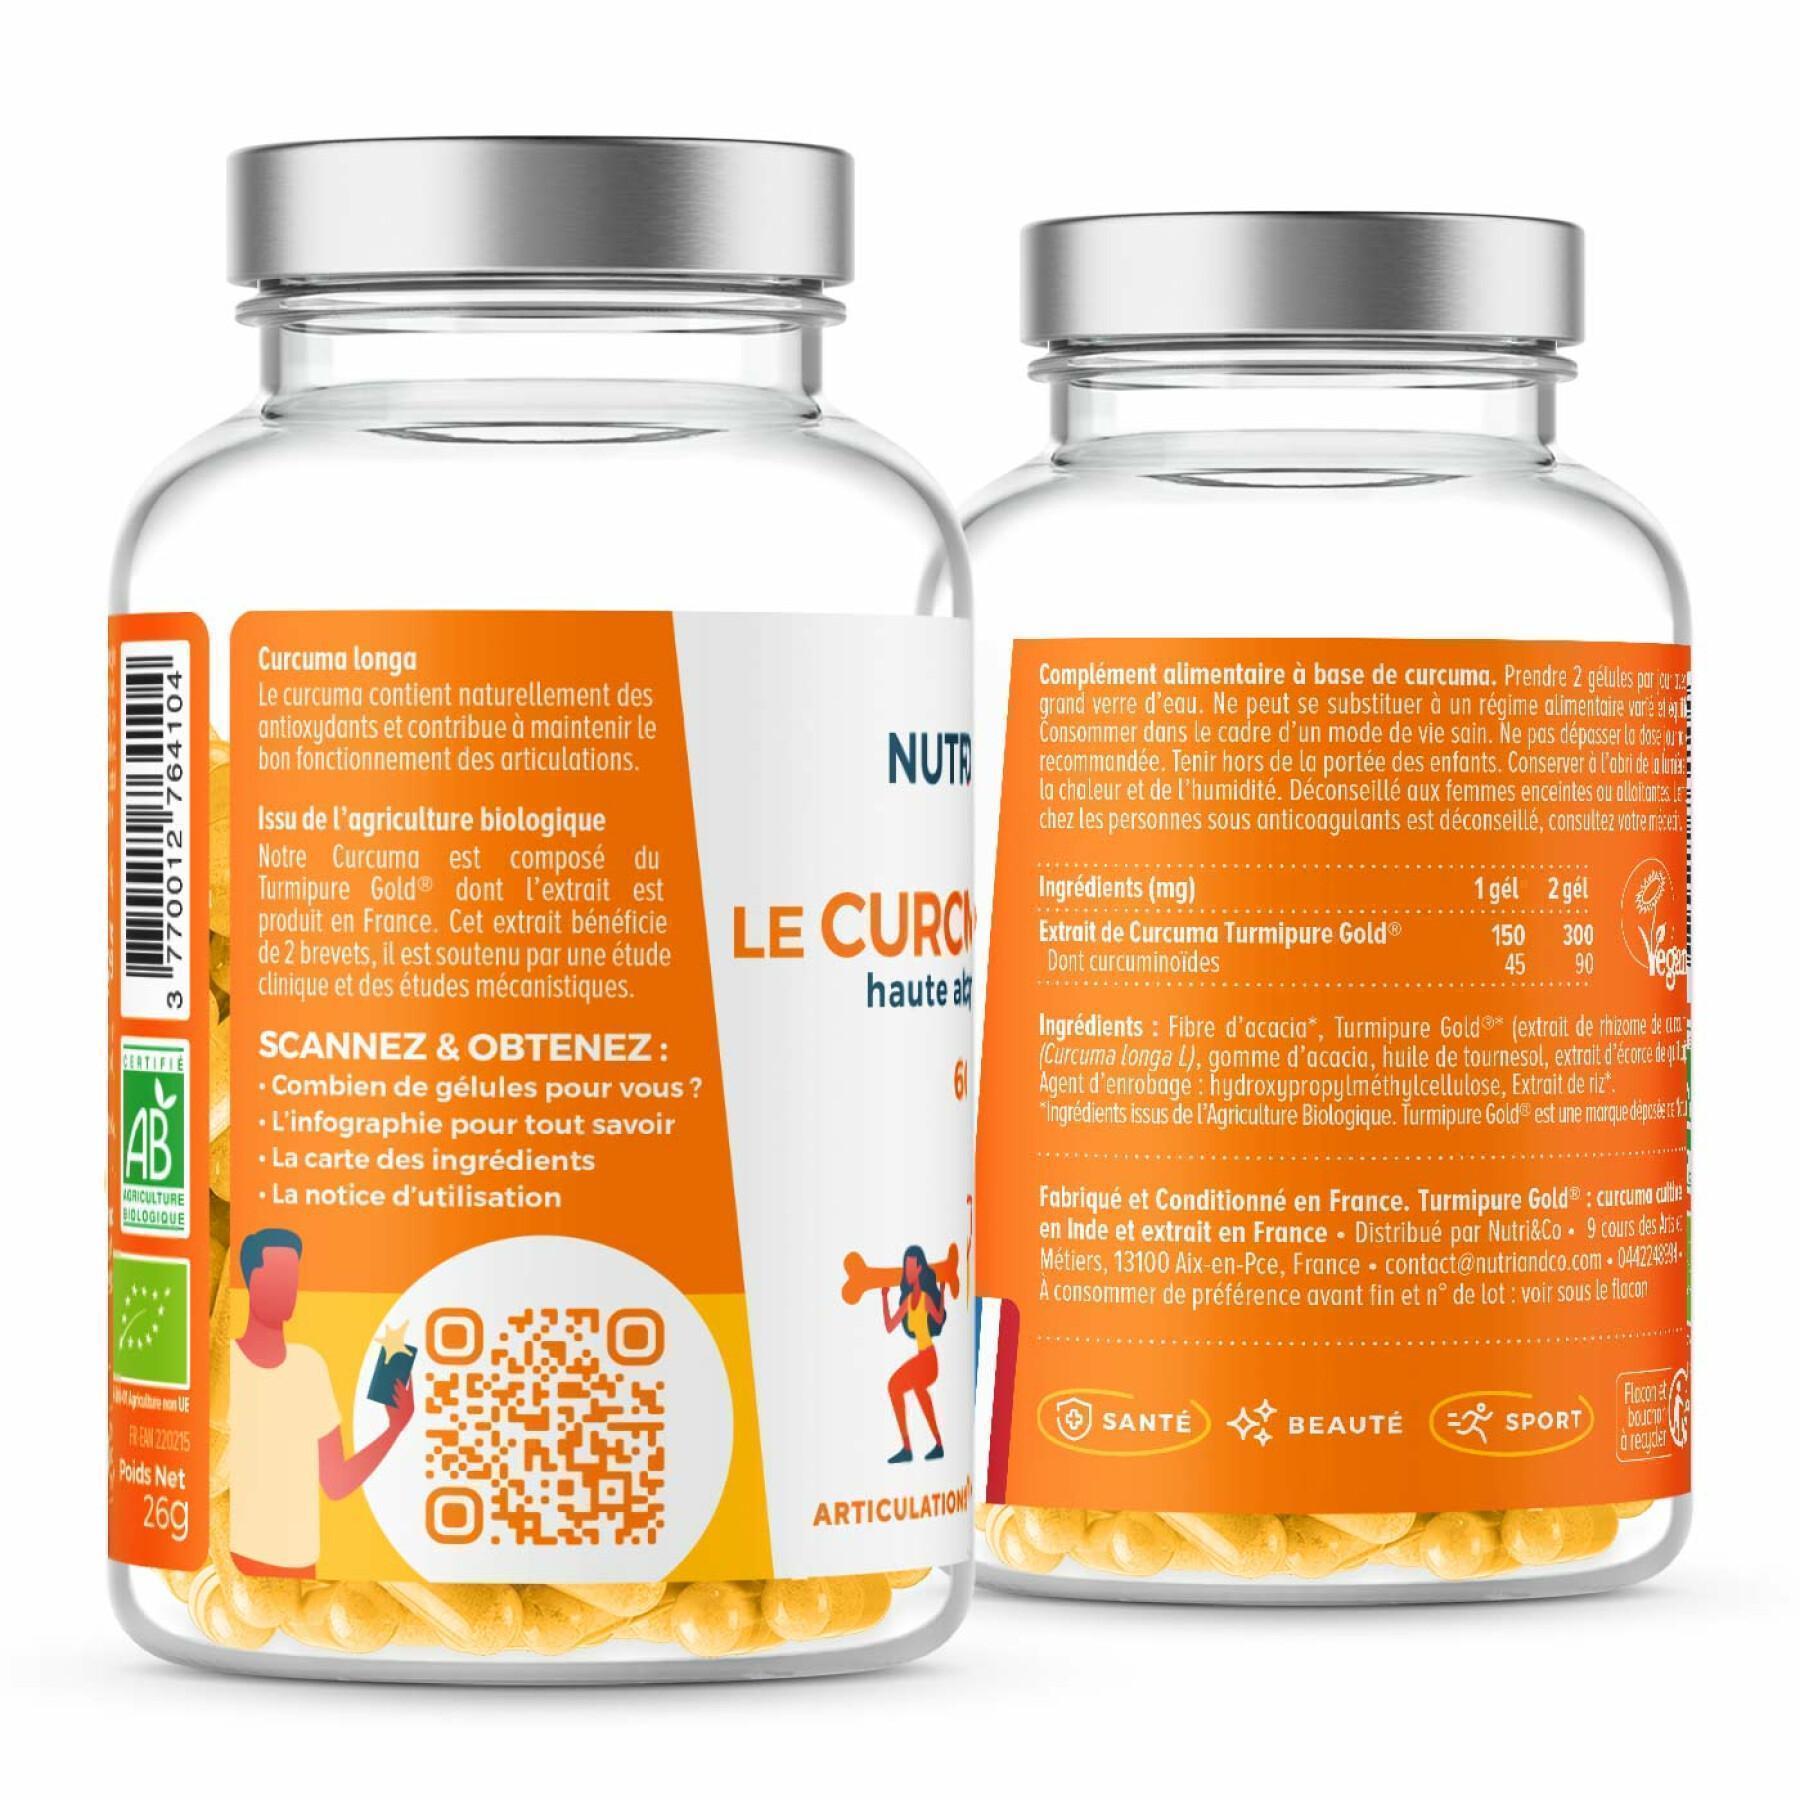 60 capsule di curcuma biologica Nutri&Co